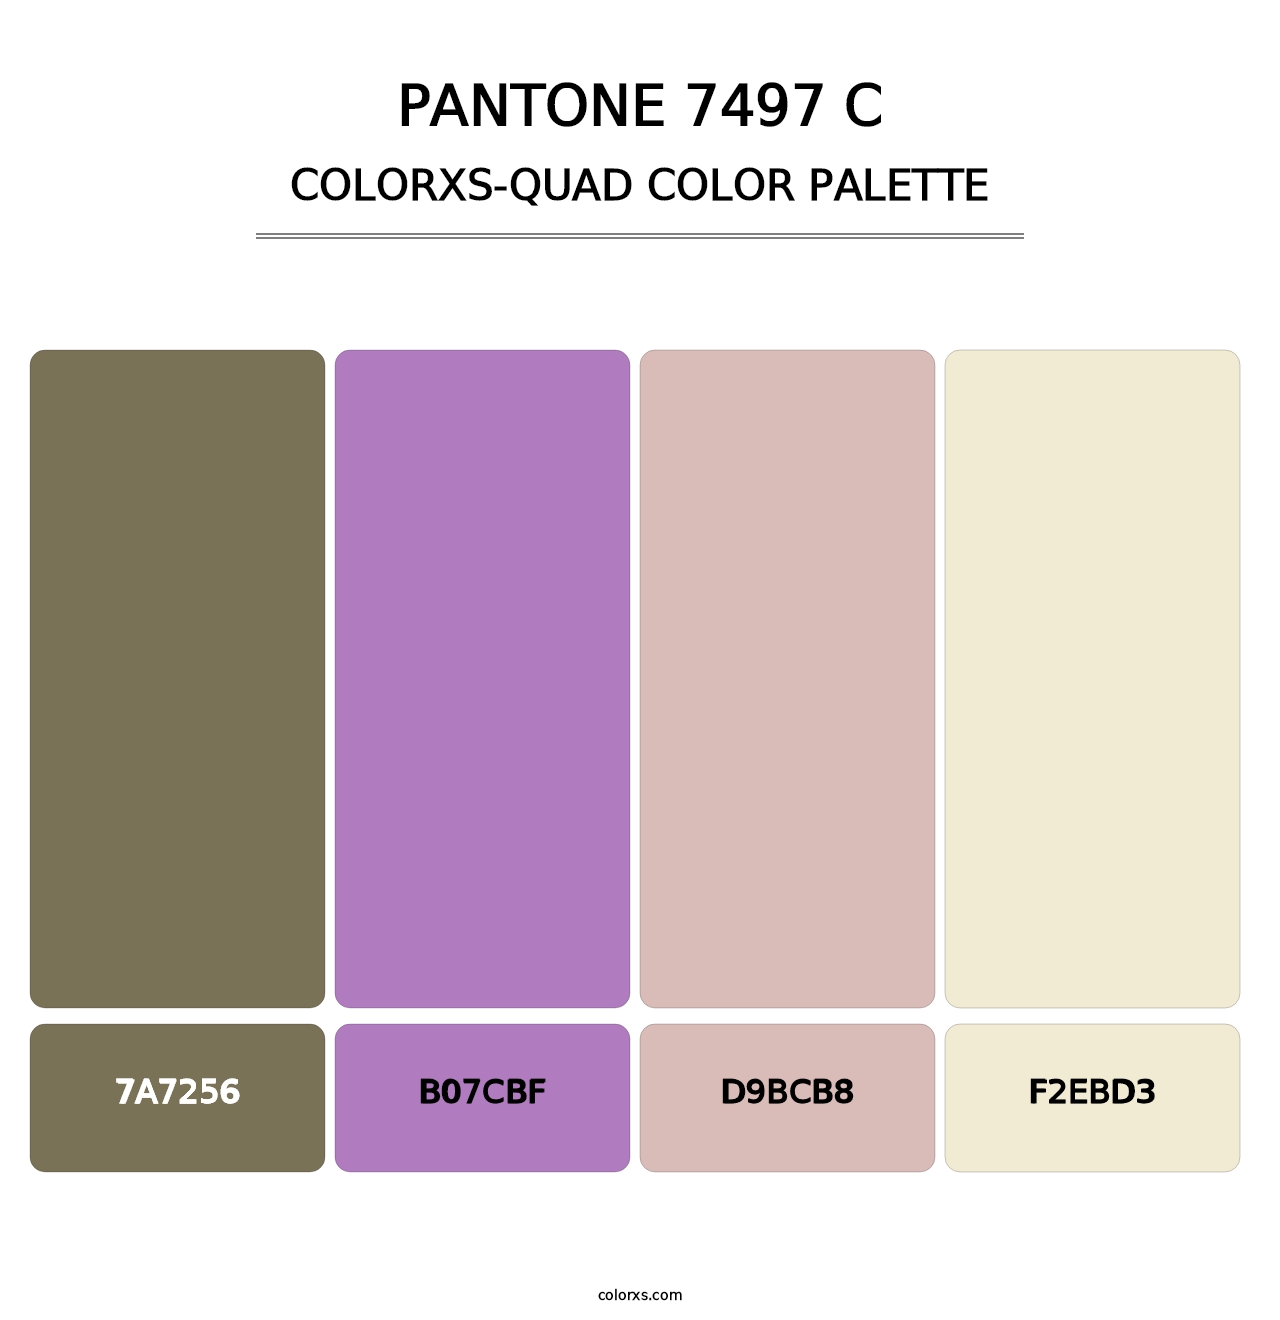 PANTONE 7497 C - Colorxs Quad Palette